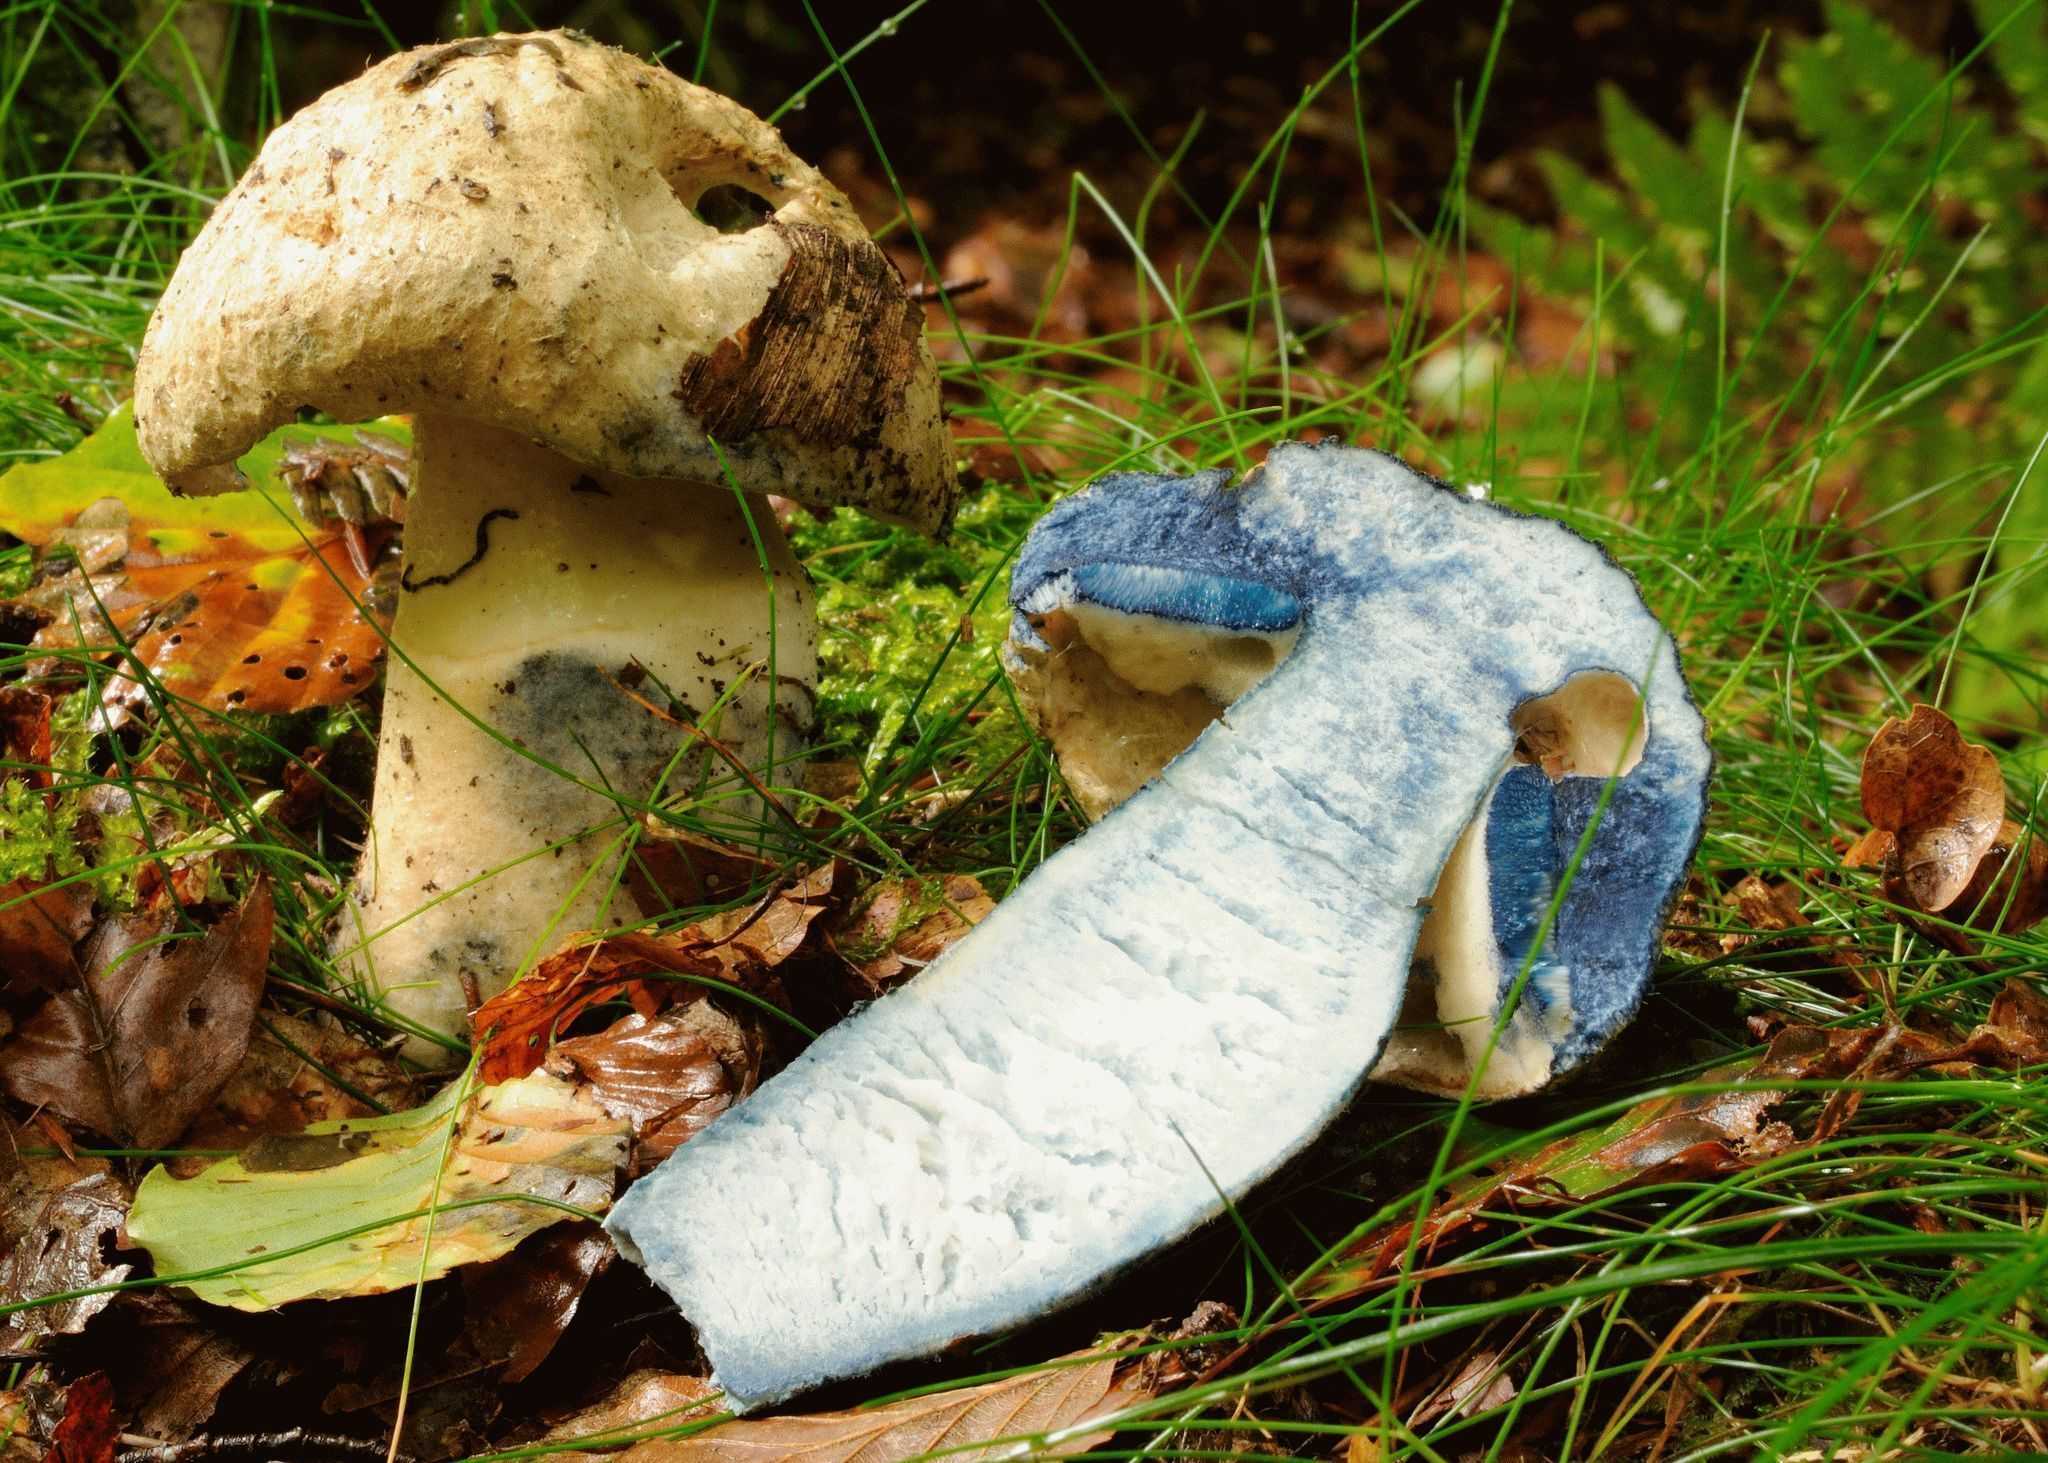 Гиропорус синеющий (gyroporus cyanescens) или гиропор берёзовый: фото, описание и как готовить этот гриб